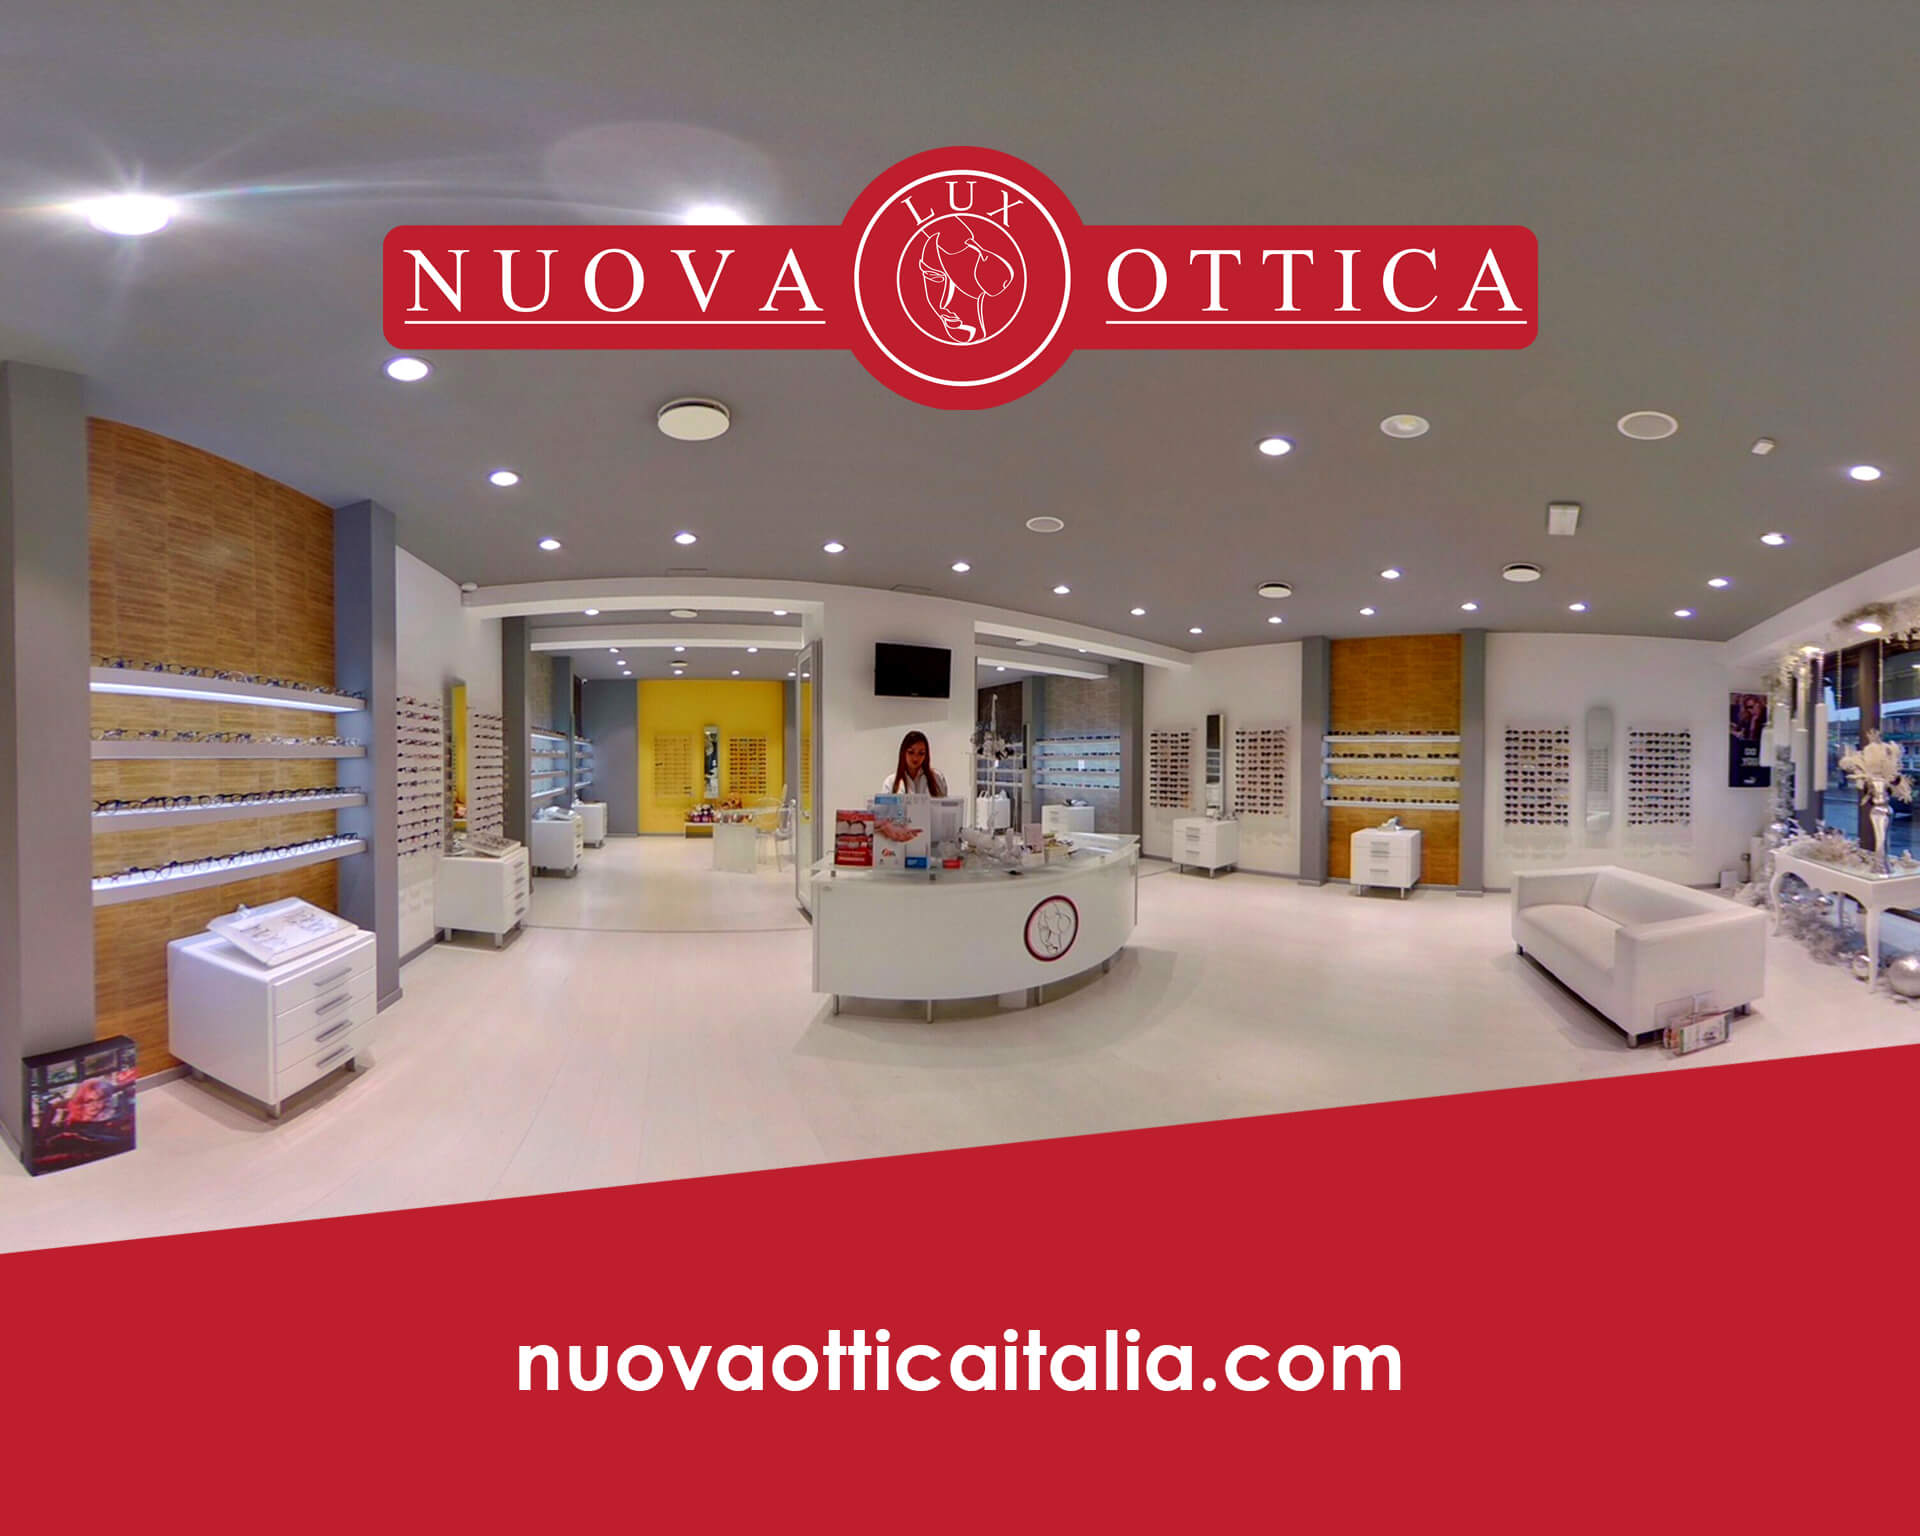 Featured image for “La Nuova Ottica”